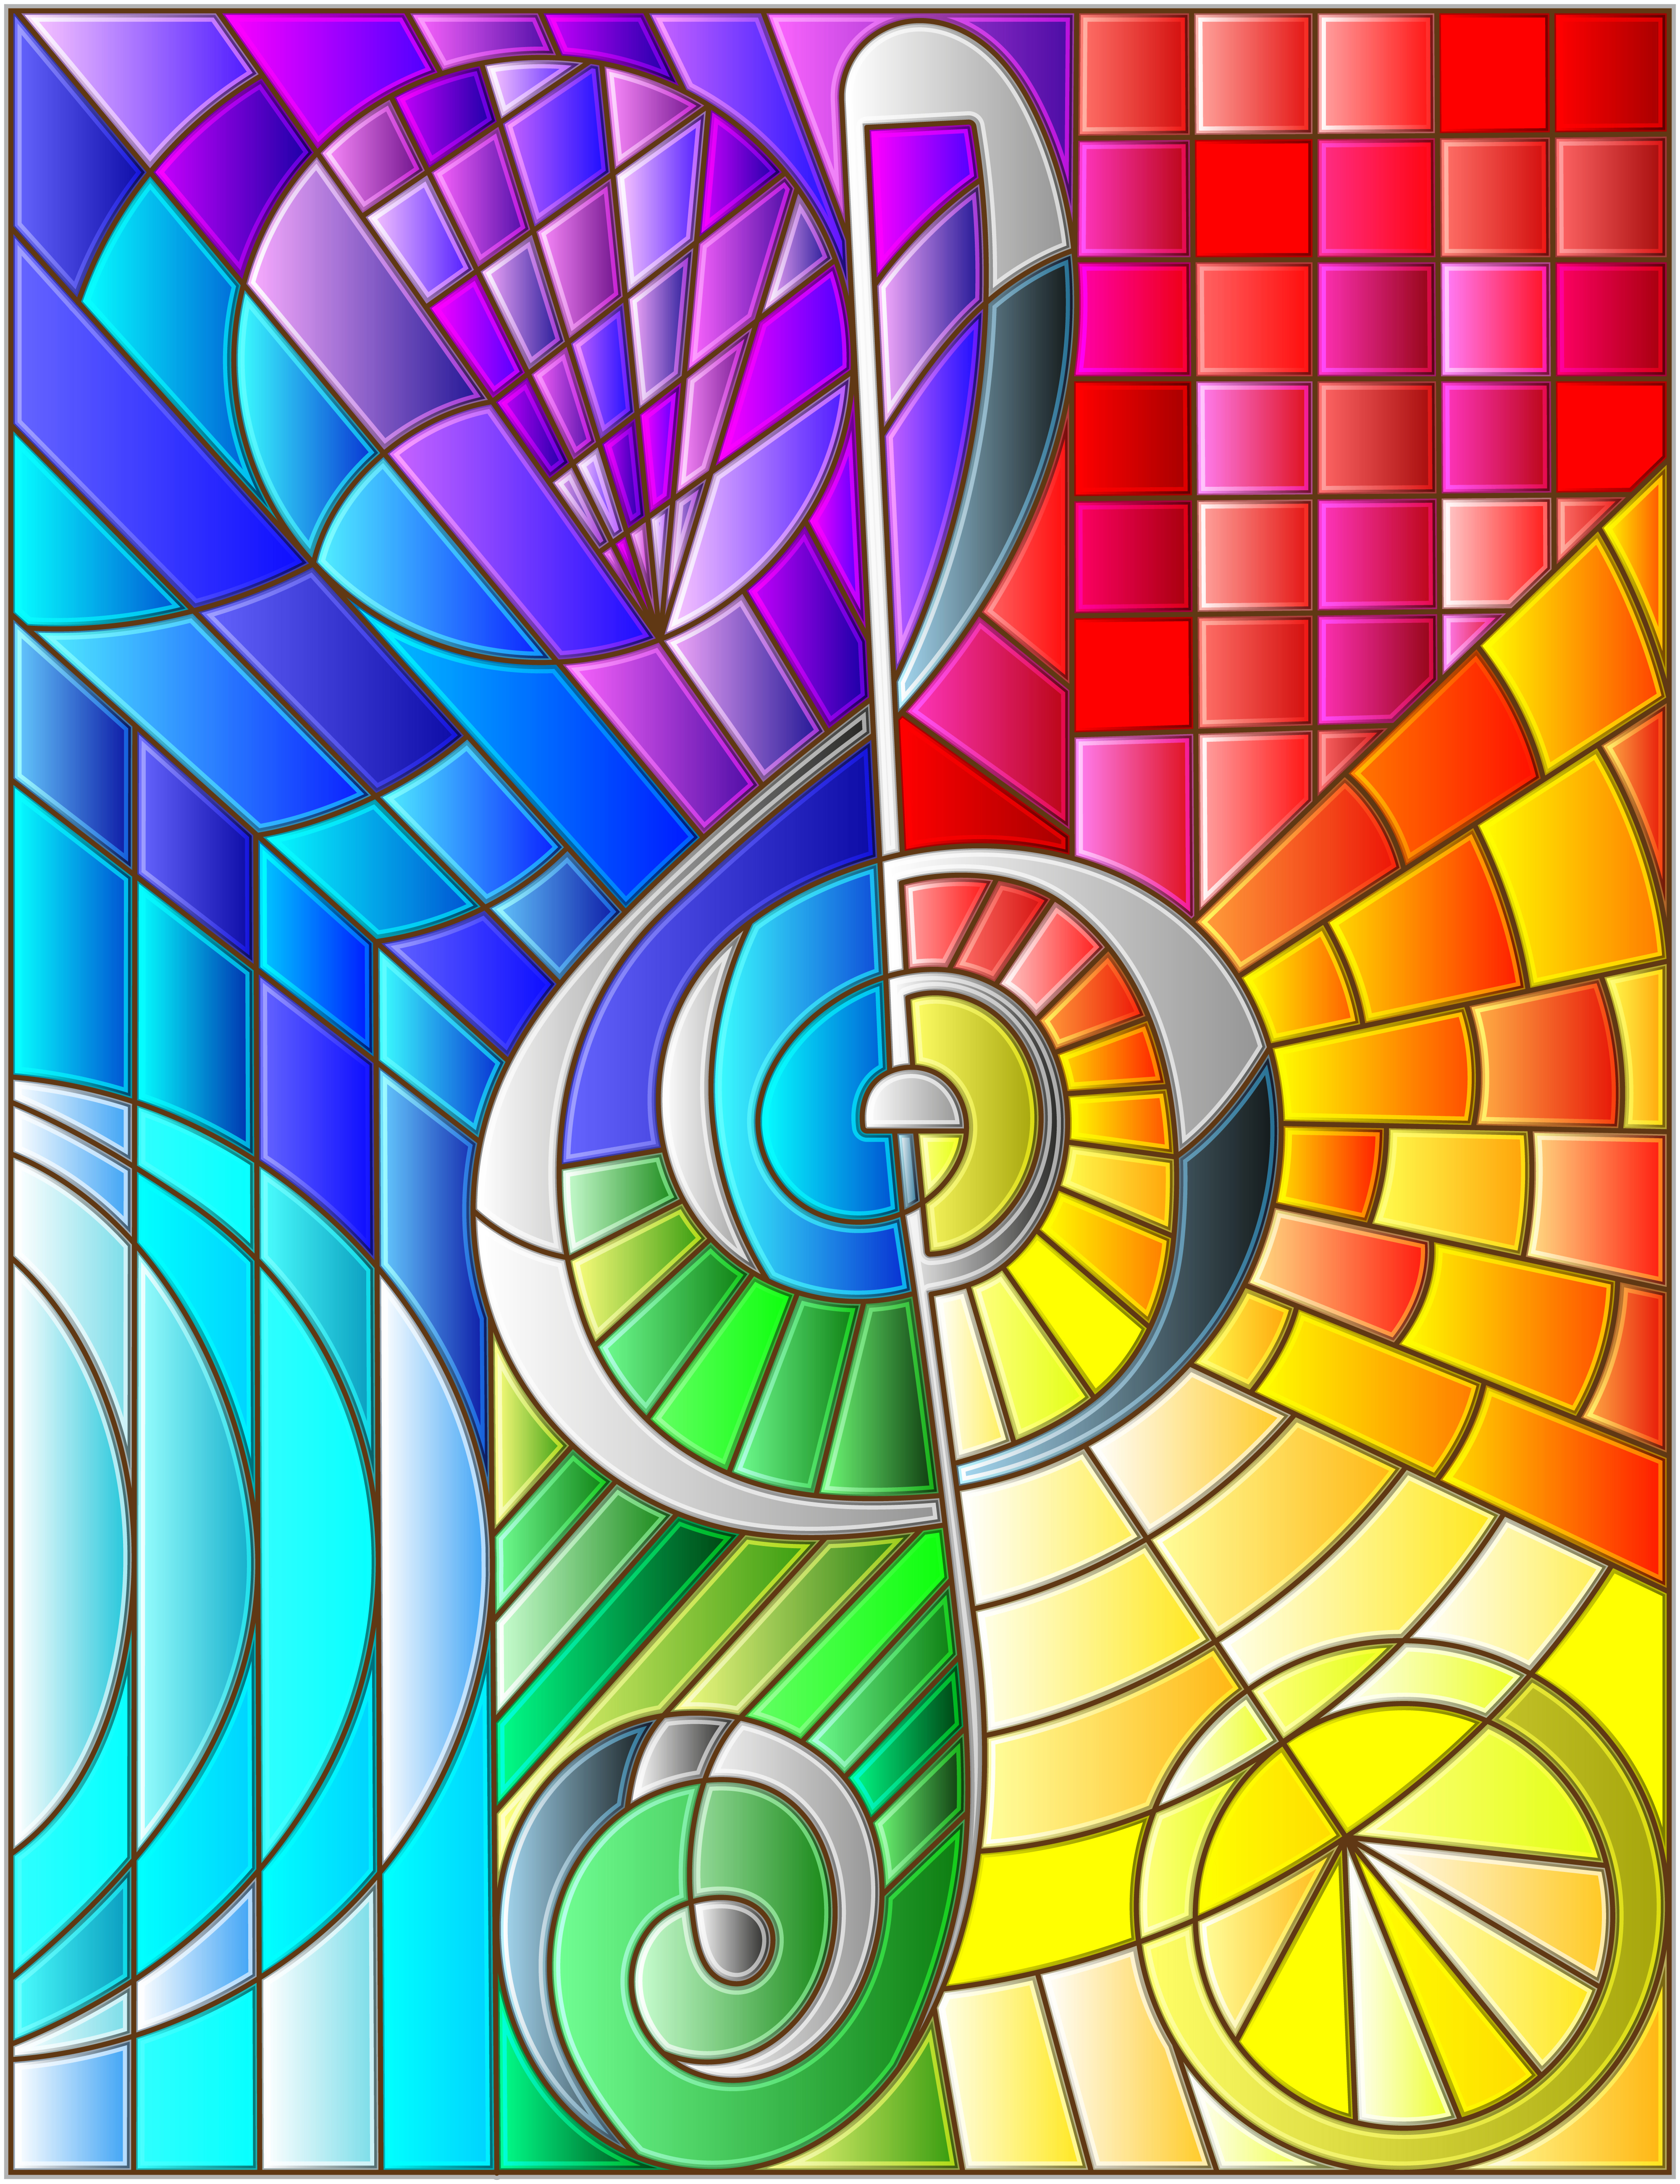 Treble clef on rainbow mosaic